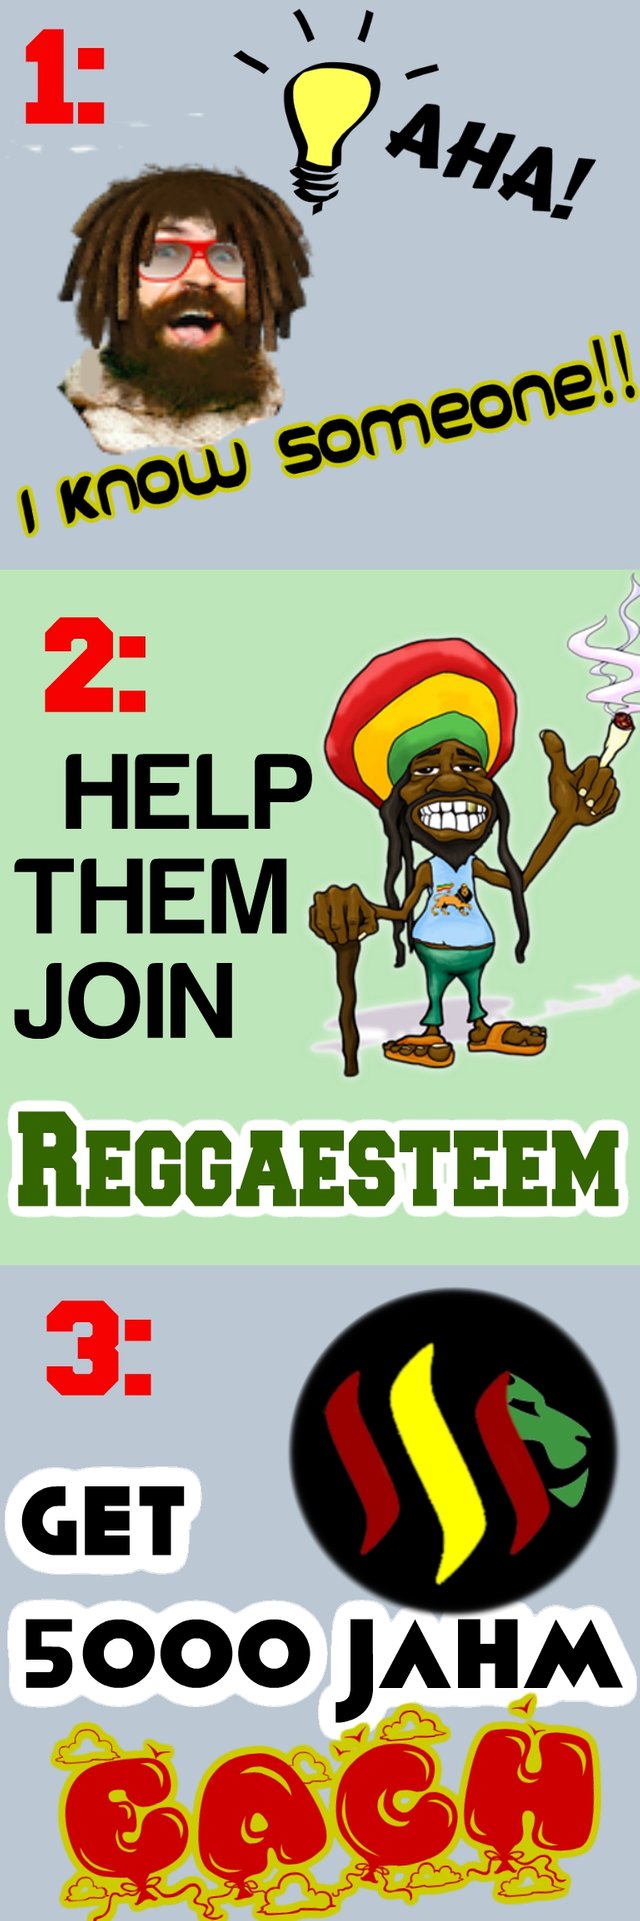 reggaesteem onboarding.jpg